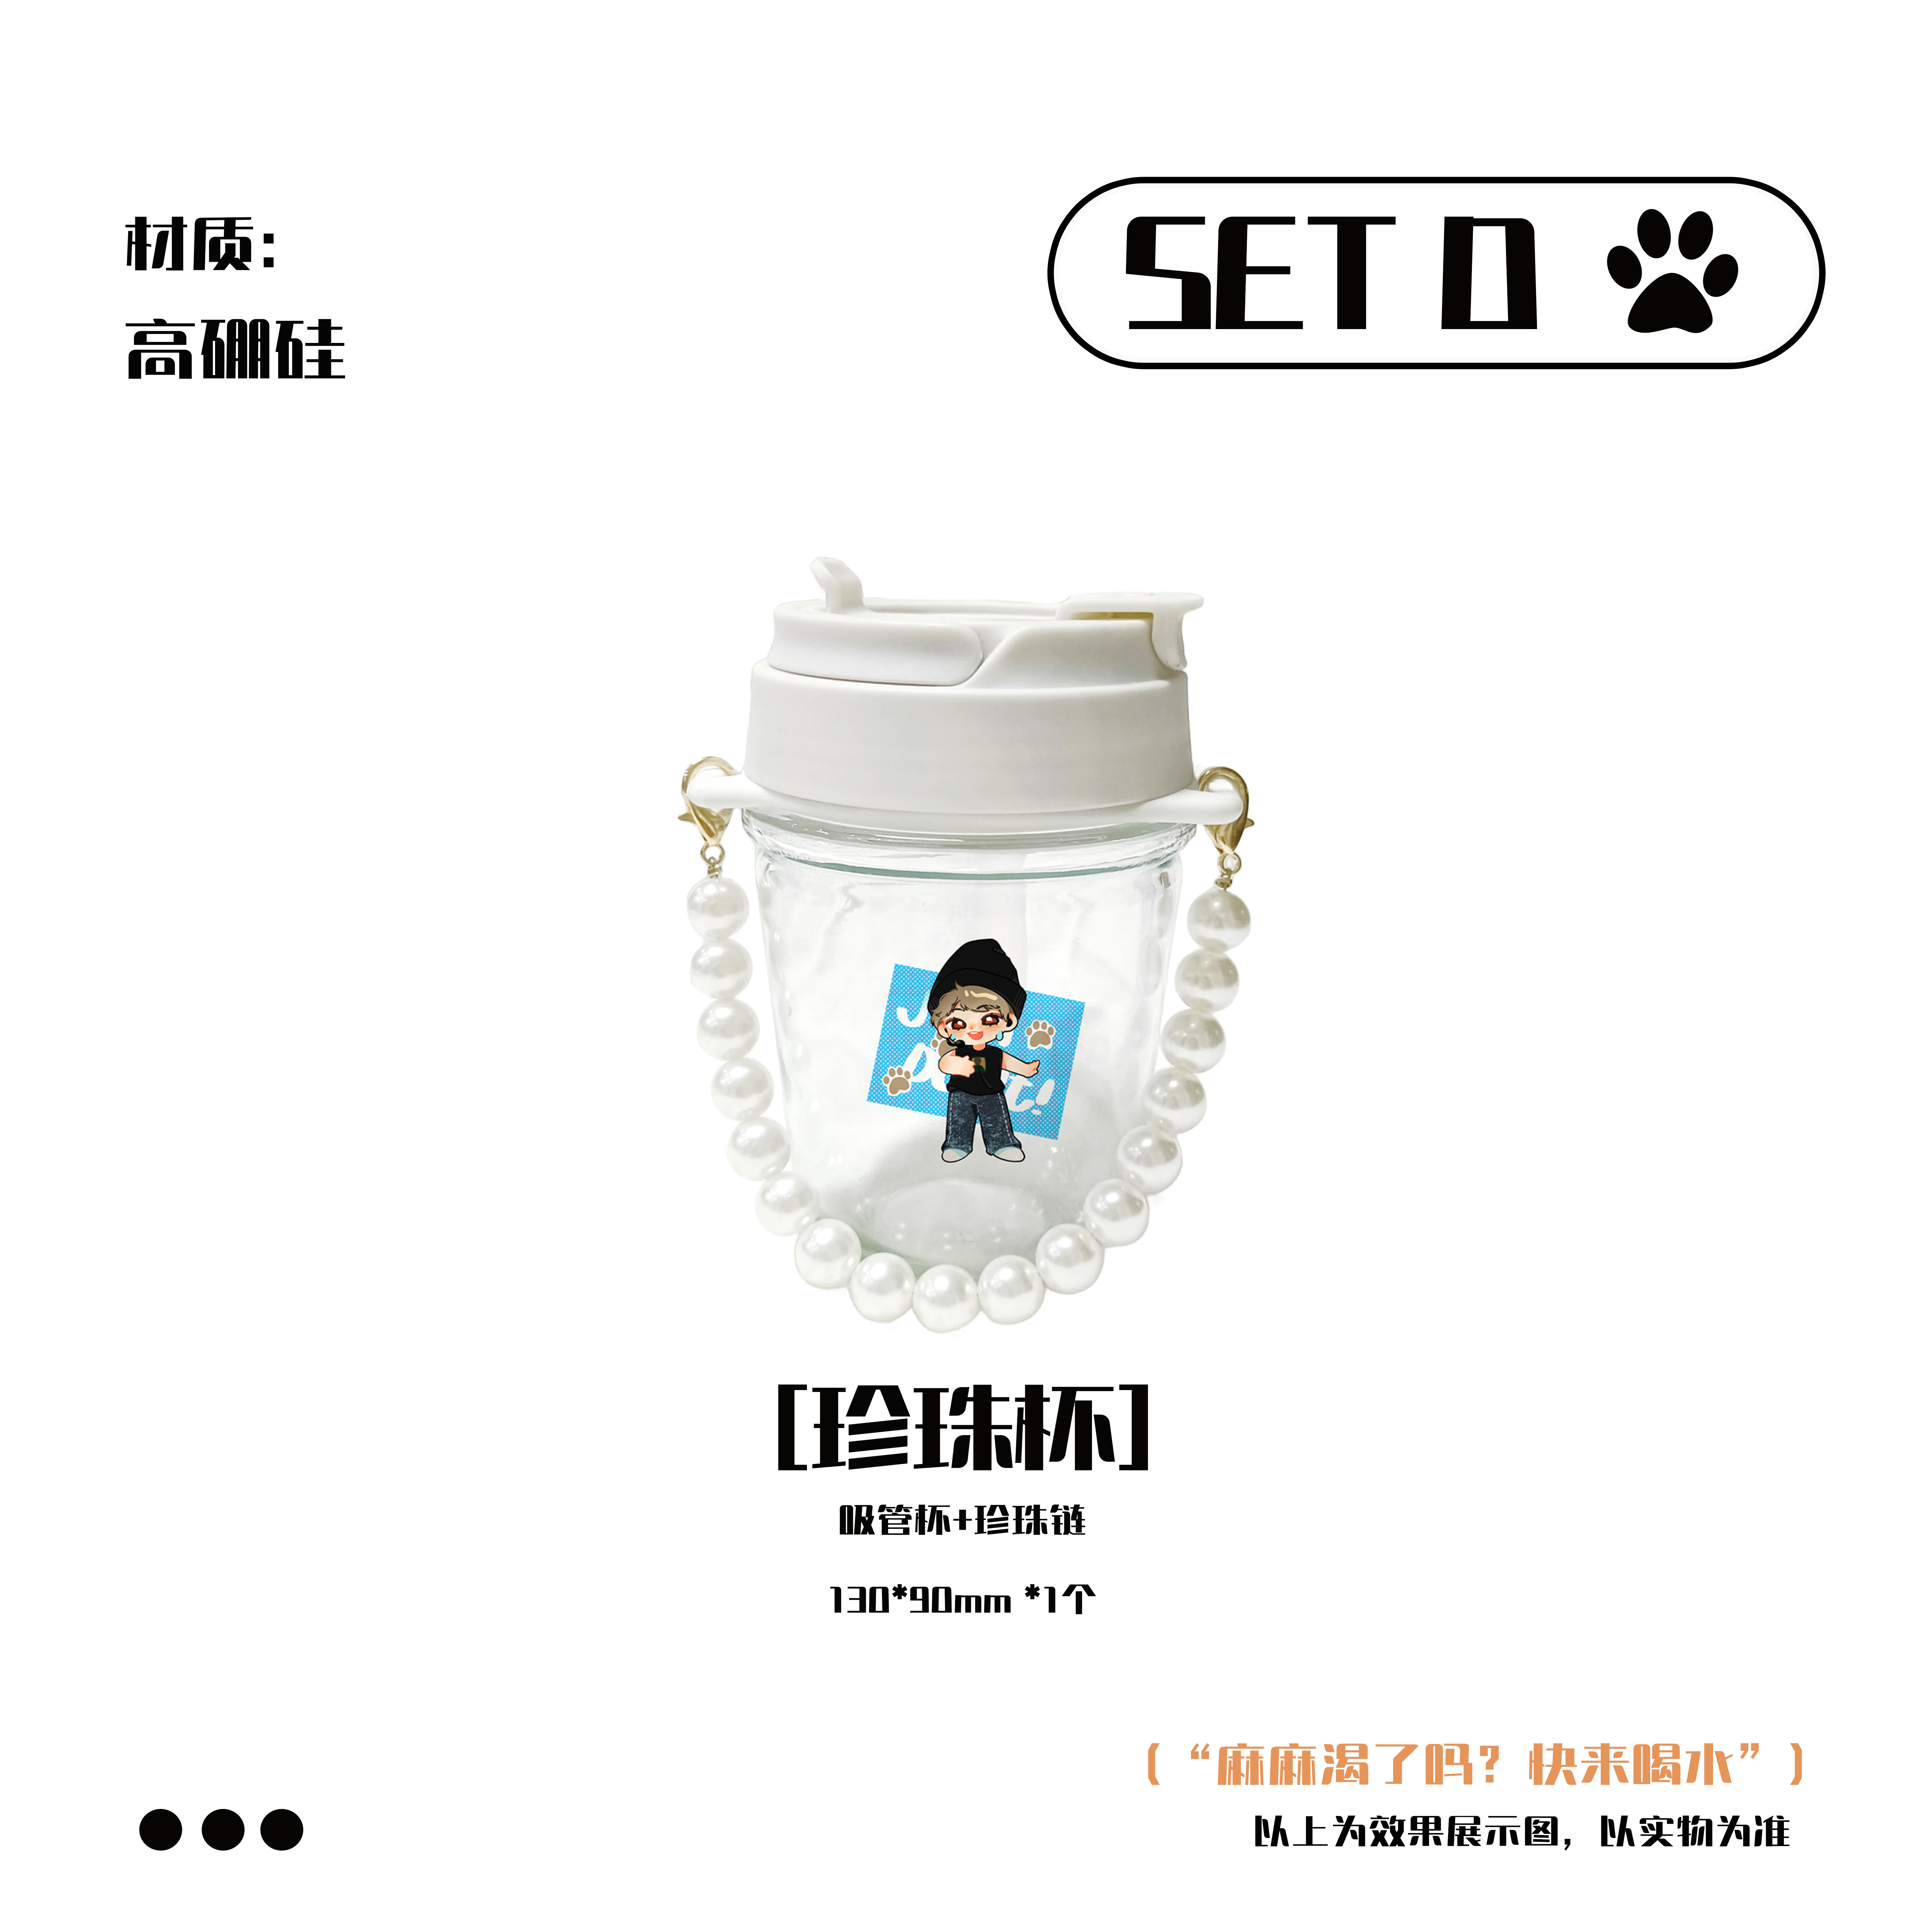 [全款 珍珠杯 特典专] [Ktown4u Special Gift] LE'V - 1st EP Album [A.I.BAE] (POCAALBUM)_染色体家族站联合